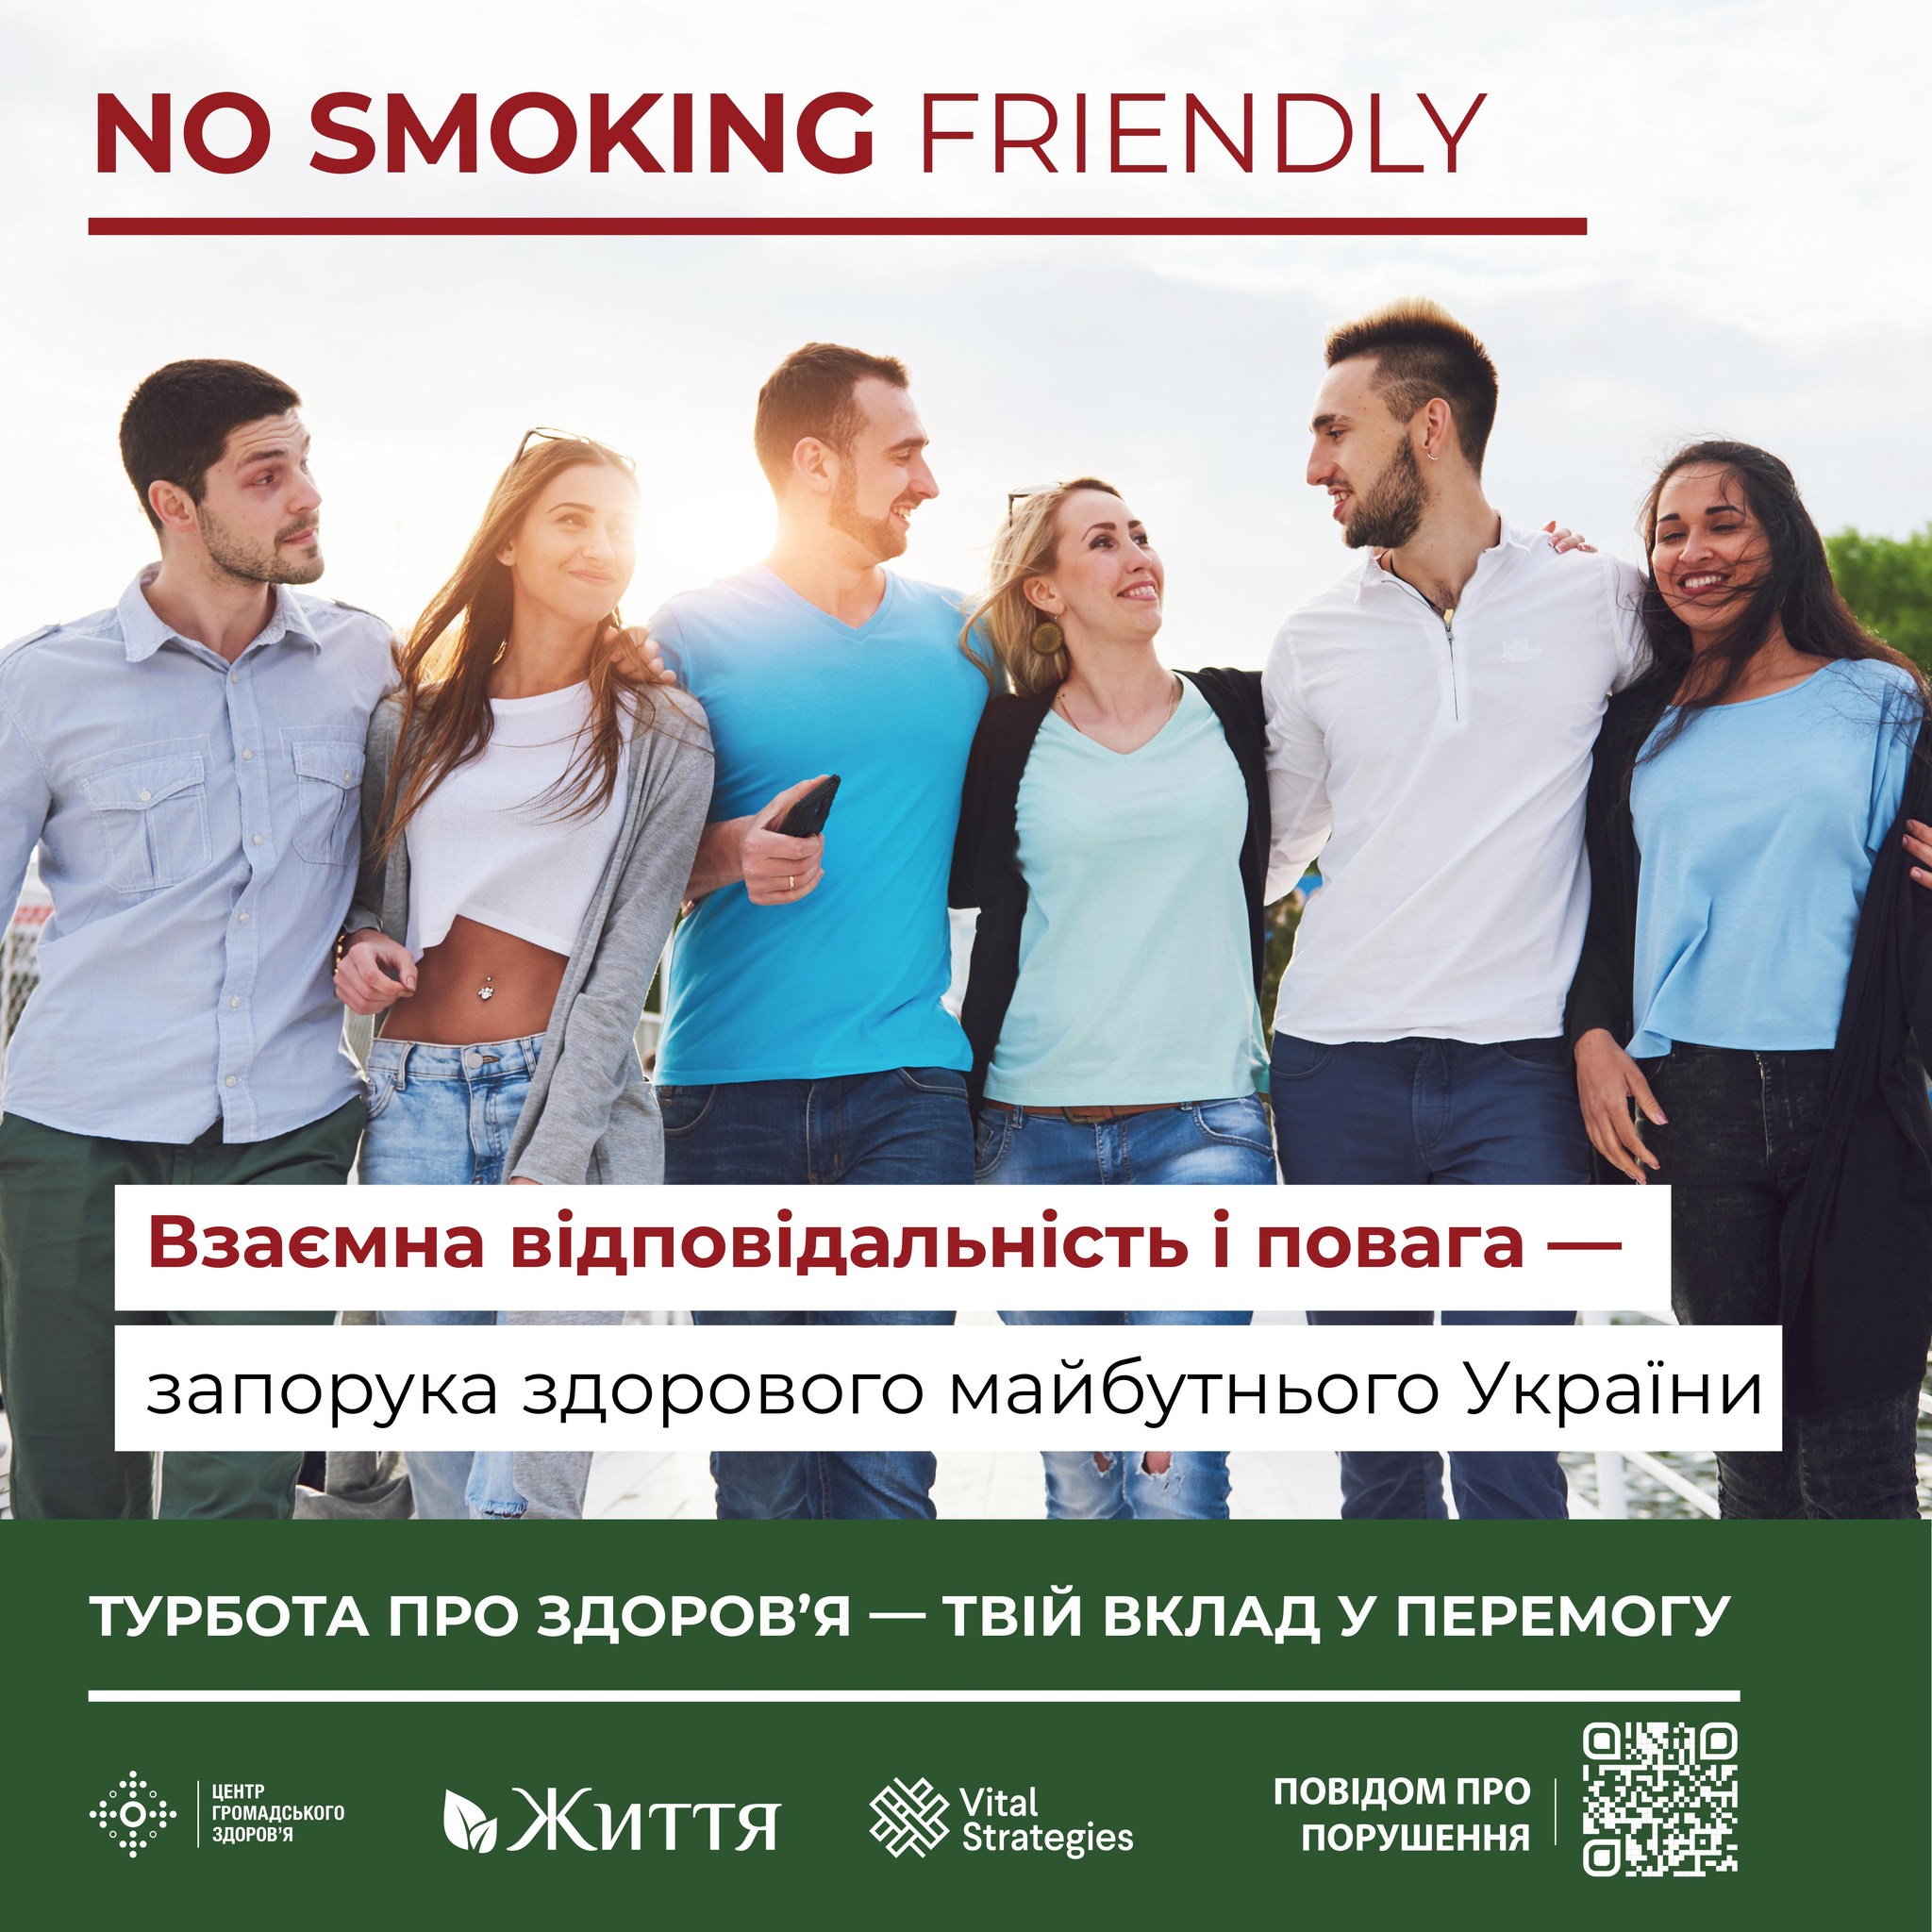 Підтримка розширення вільних від куріння громадських місць абсолютною більшістю громадян 86%